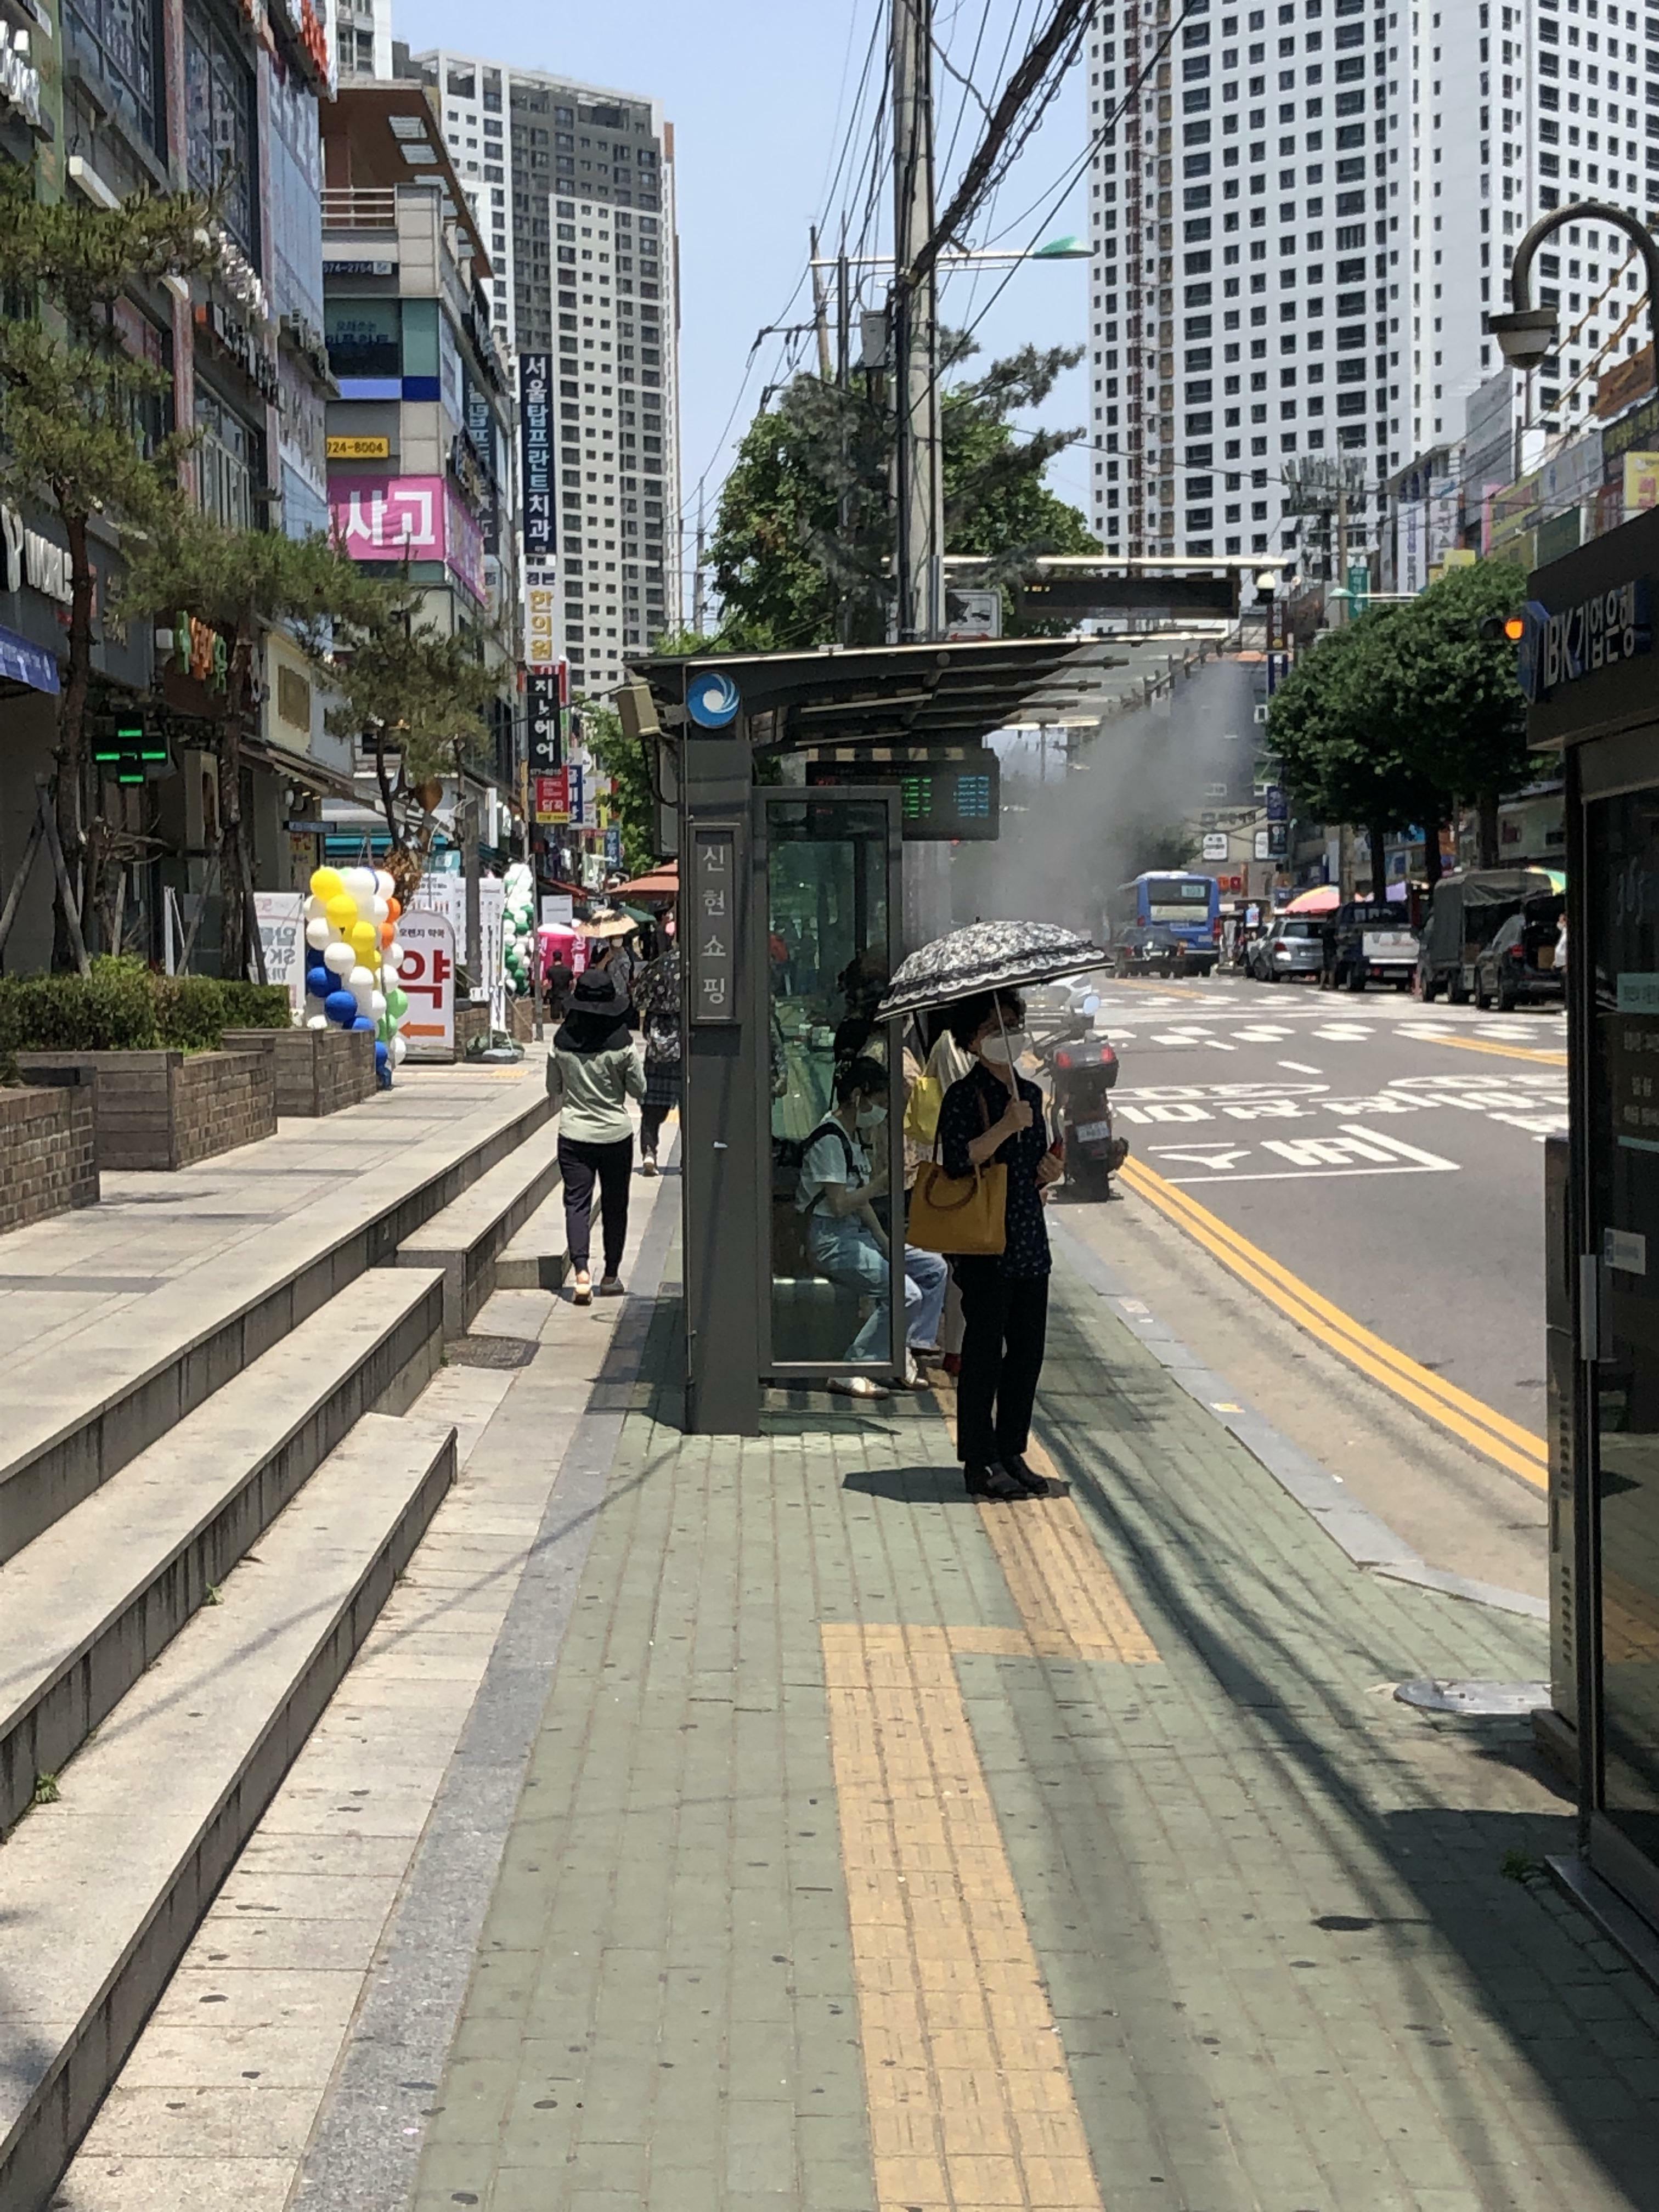 Arrêt de bus en Corée qui pulvérise de la brume pendant l'été pour garder les gens au frais.